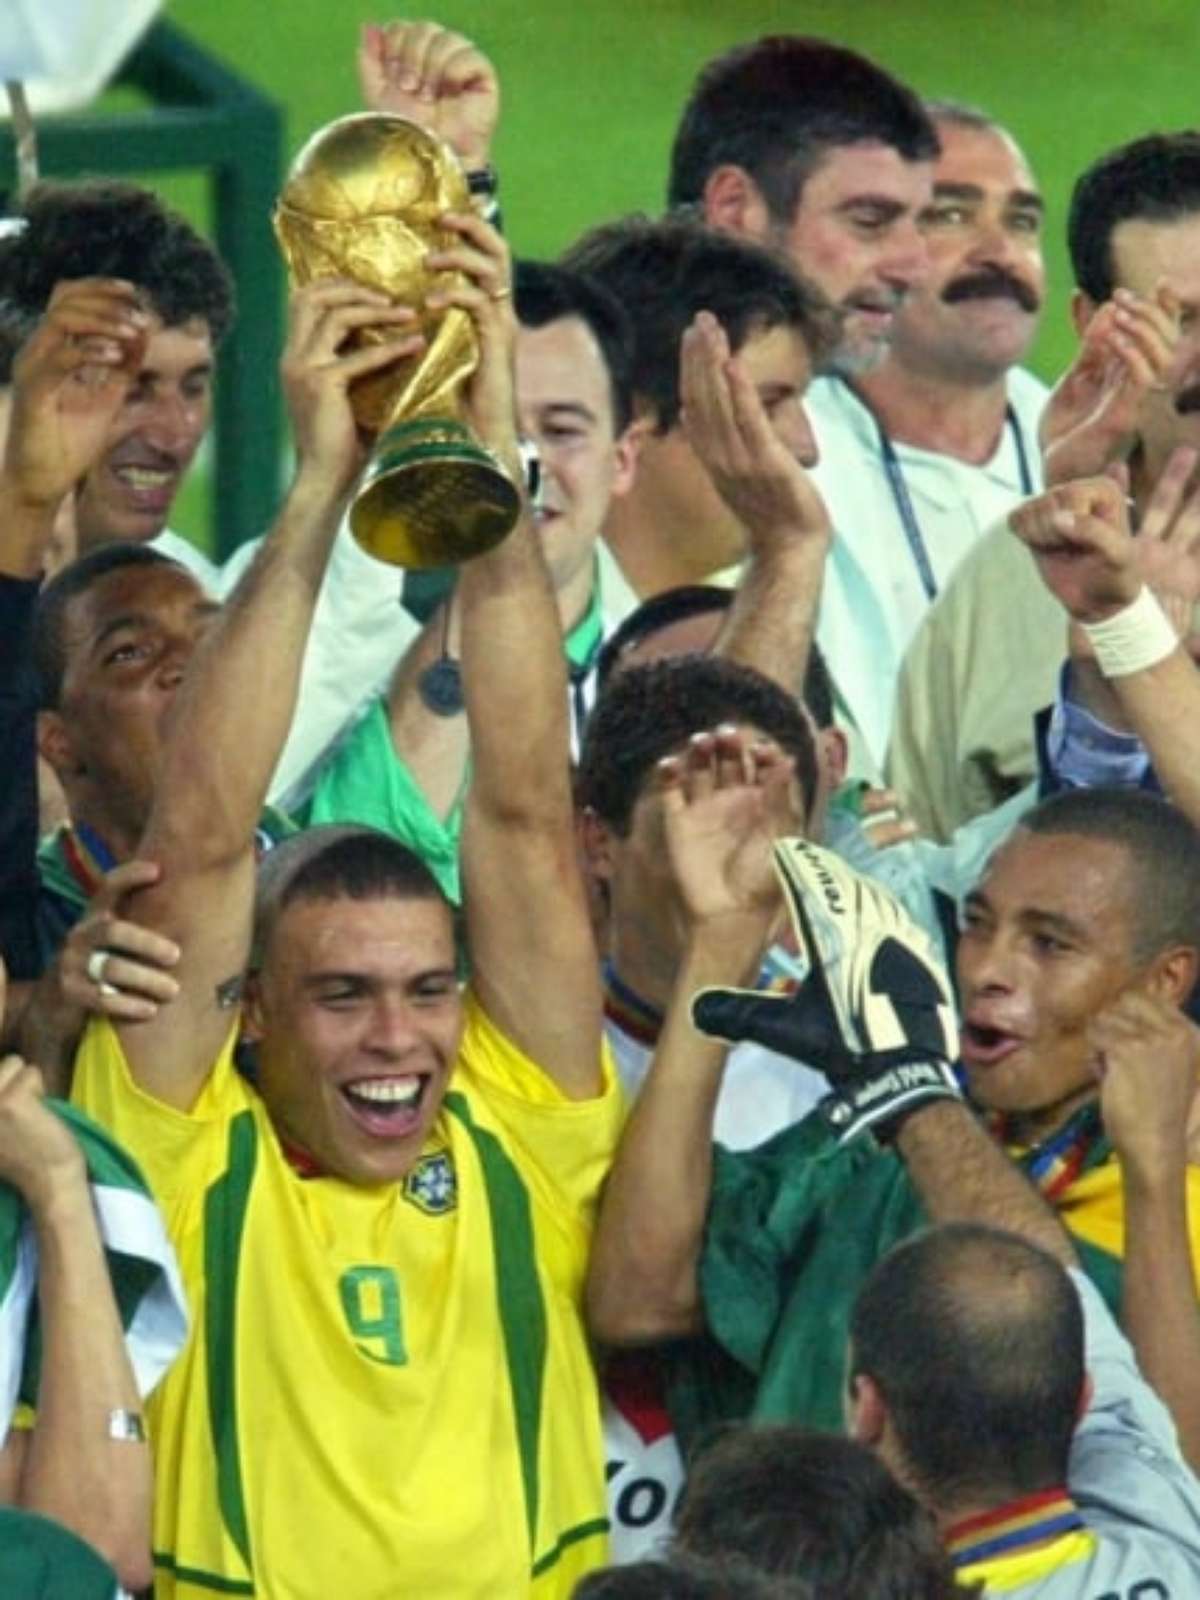 Copa do Mundo: Veja todas as seleções campeãs na história